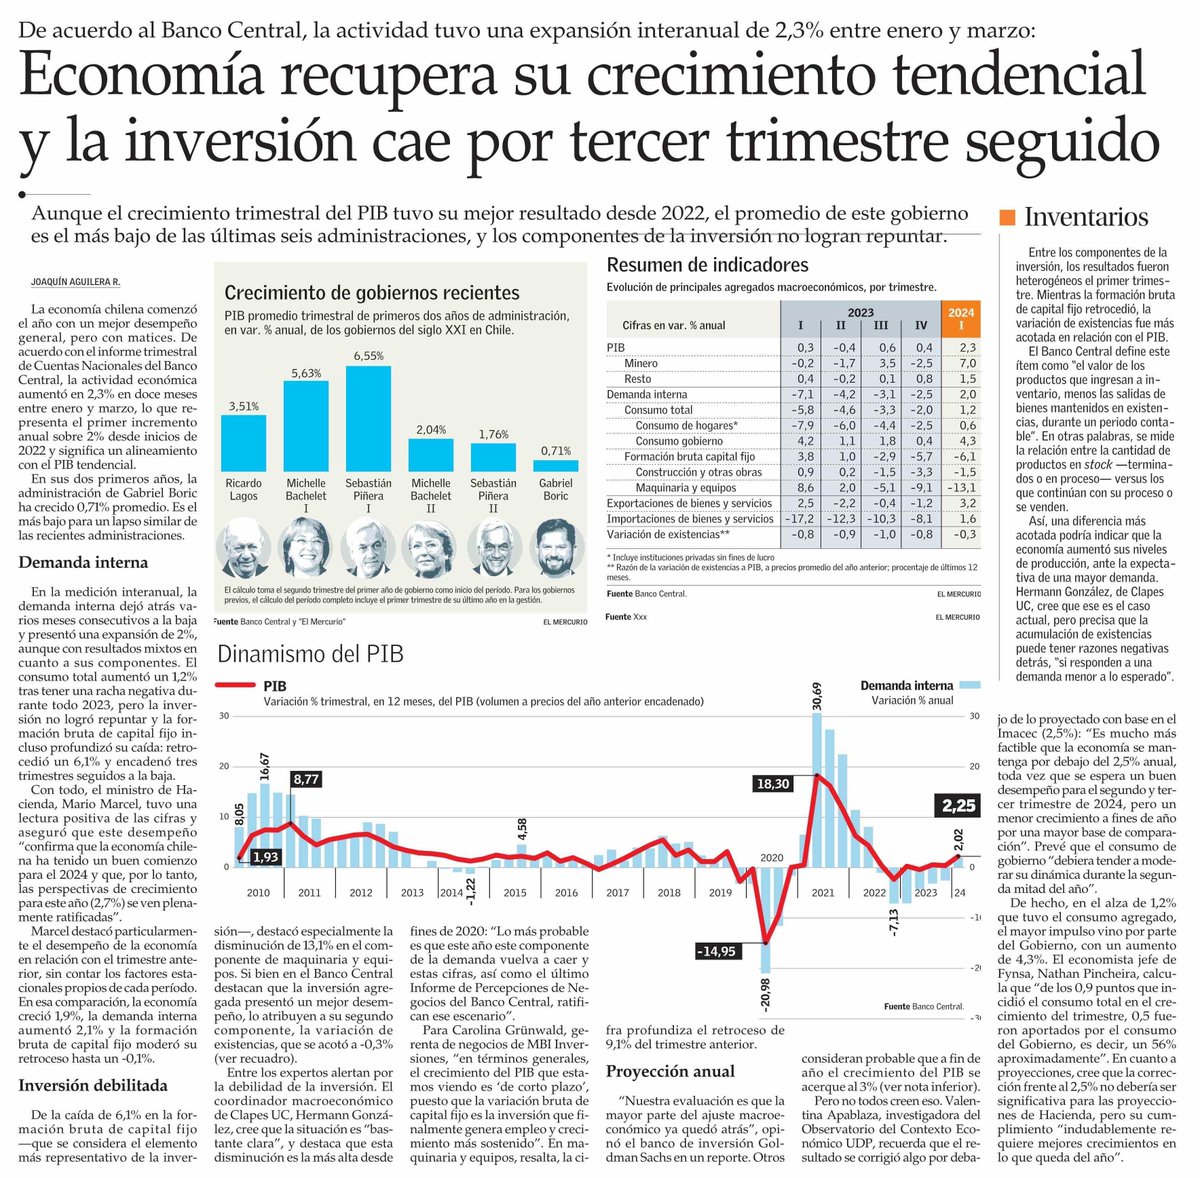 [NOTA @ElMercurio_cl] Nuestro coordinador macroeconómico, @hegonzalb, alerta sobre la debilidad de la inversión, destacando la probabilidad de una nueva caída. Las 'cifras, así como el último Informe de Percepciones de Negocios del Banco Central, ratifican este escenario'.